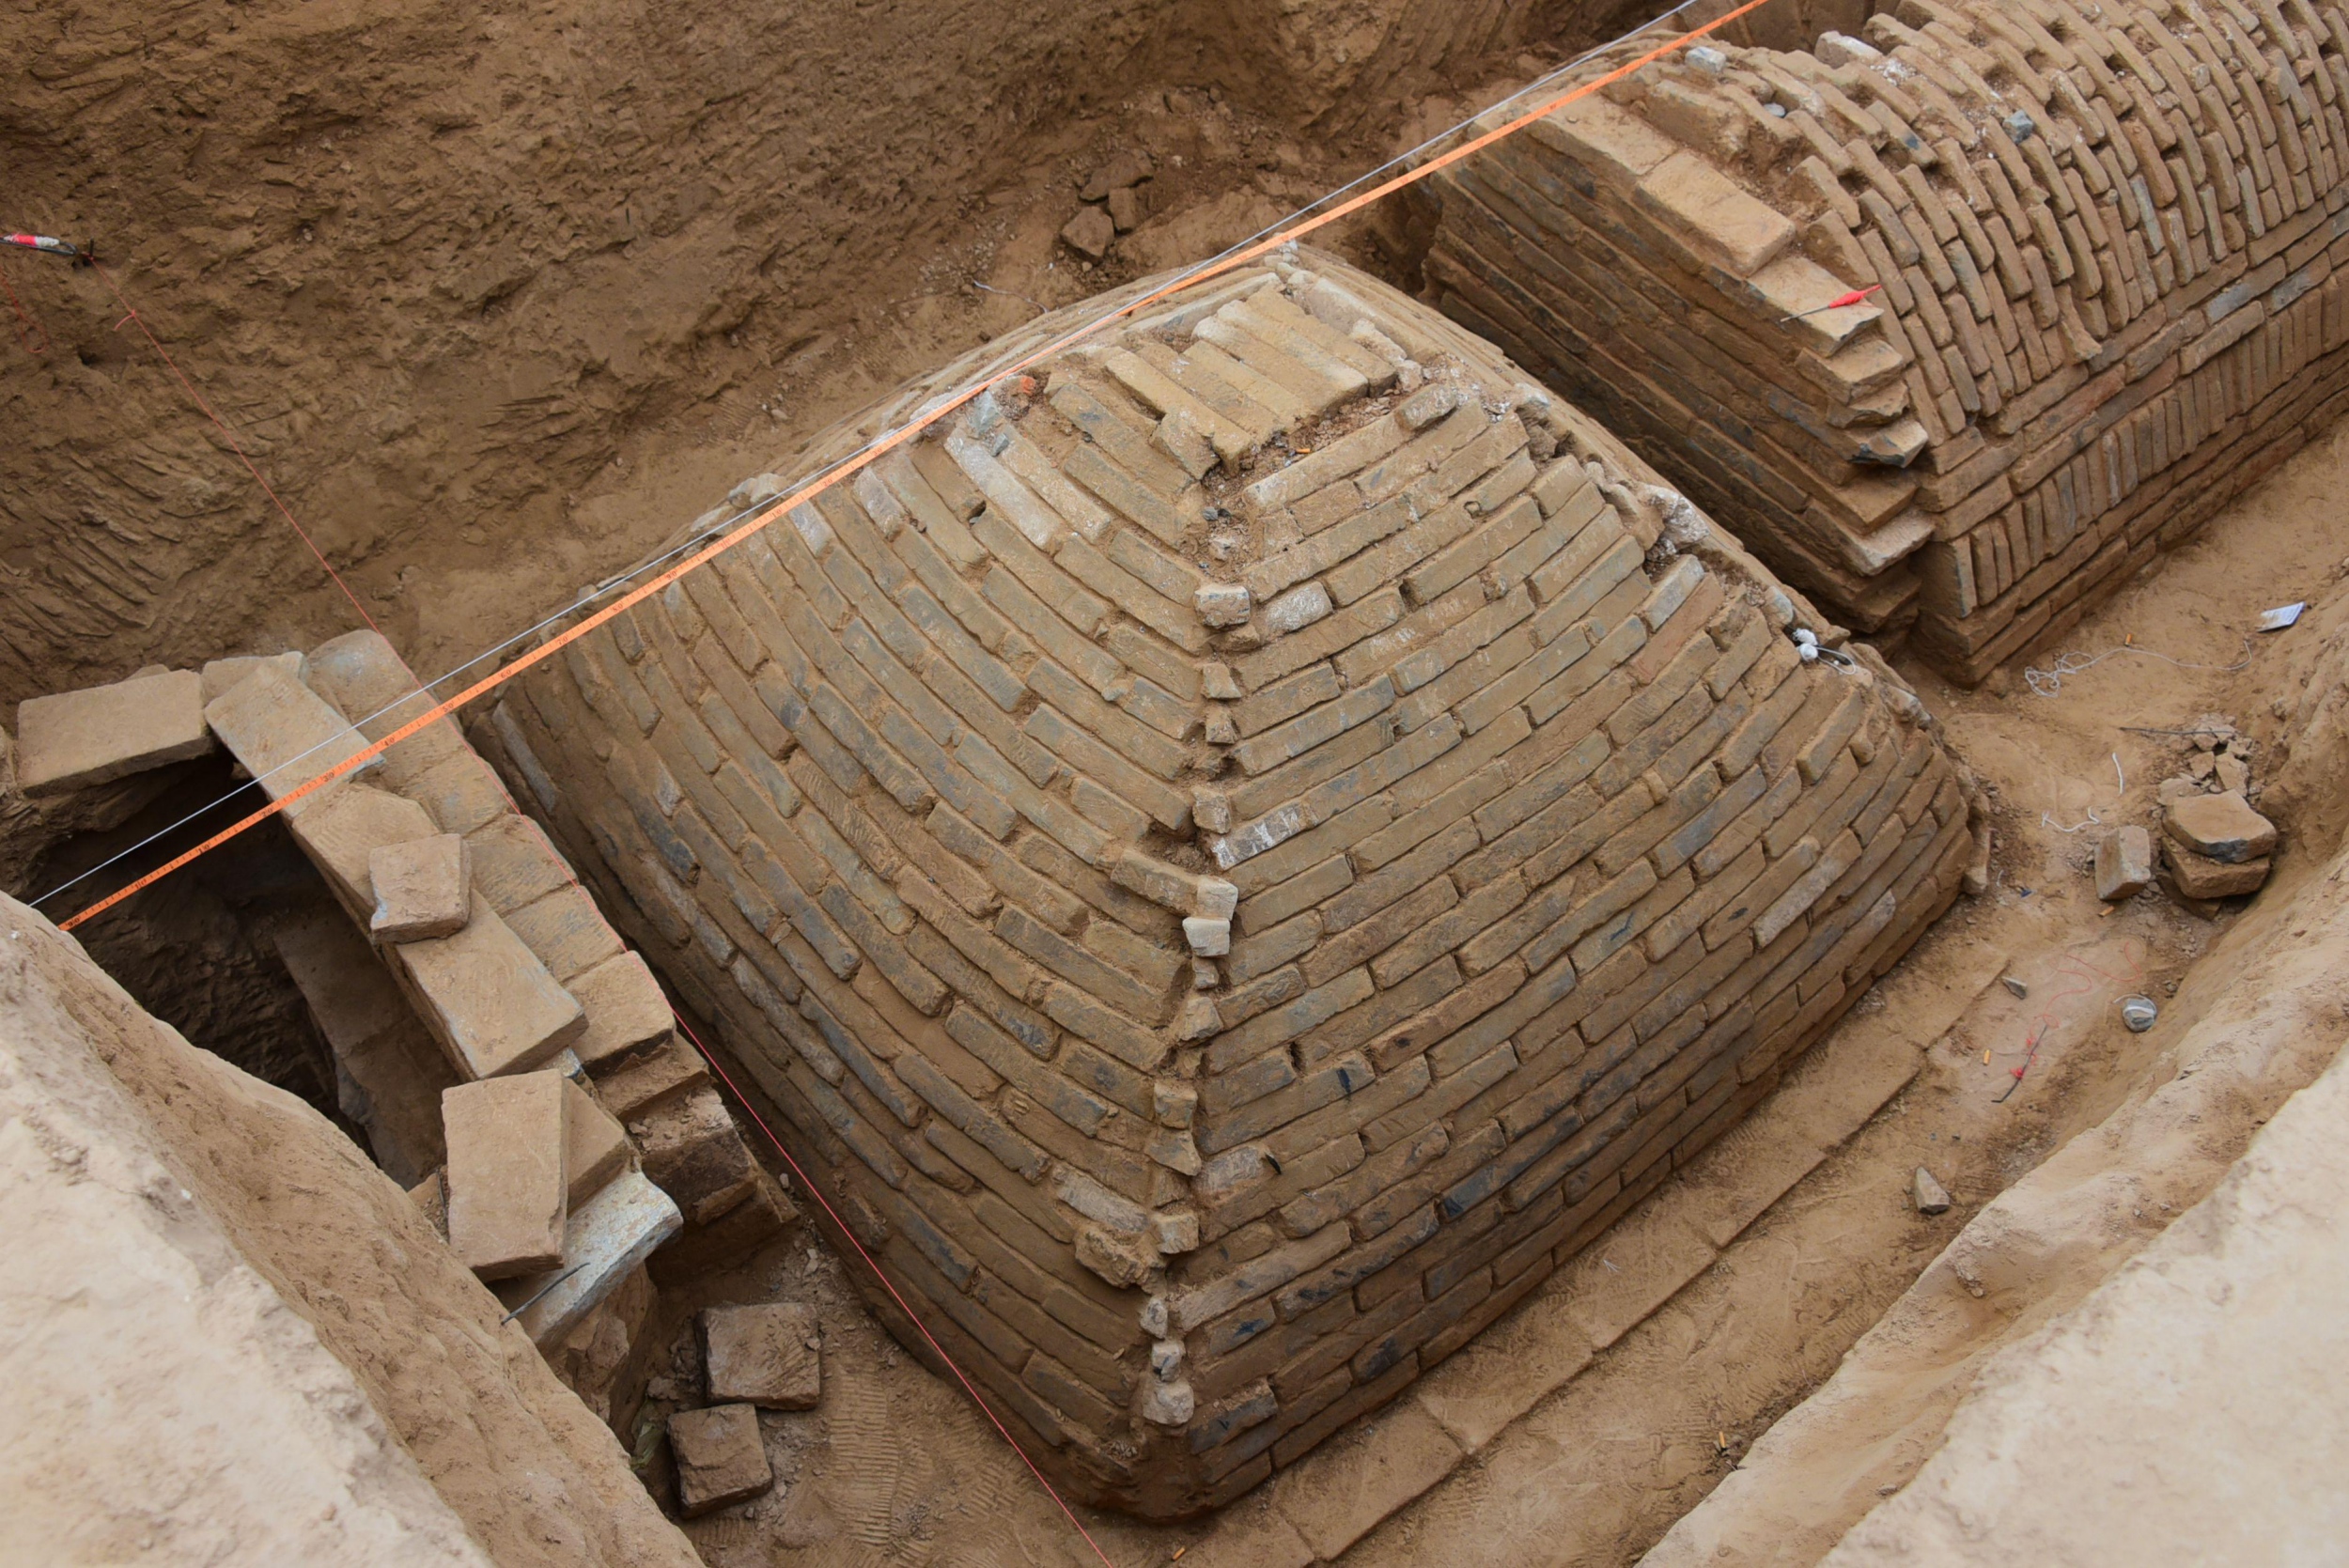 Ανακαλύφθηκε ταφικός θάλαμος 4.000 ετών στο Κάιρο (φωτο)